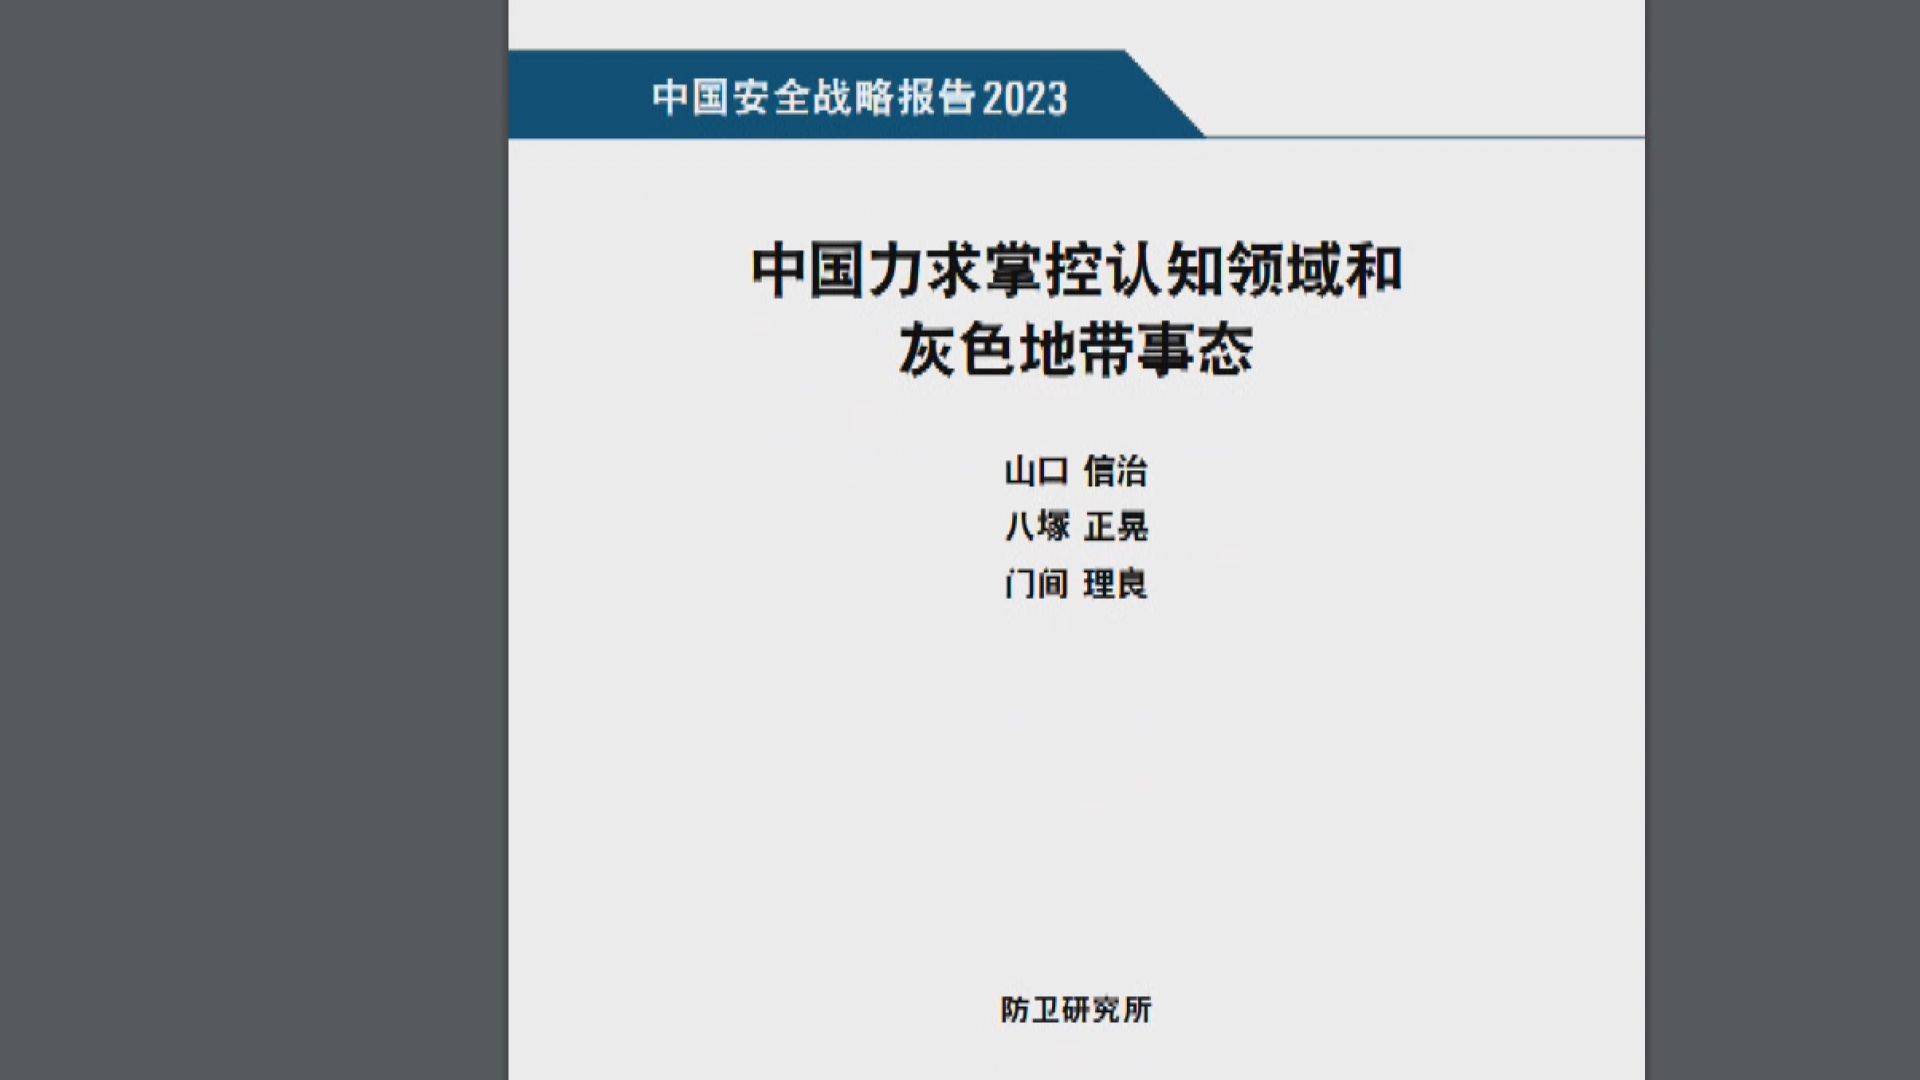 日本防衛省智庫報告指北京對台灣構成嚴重威脅